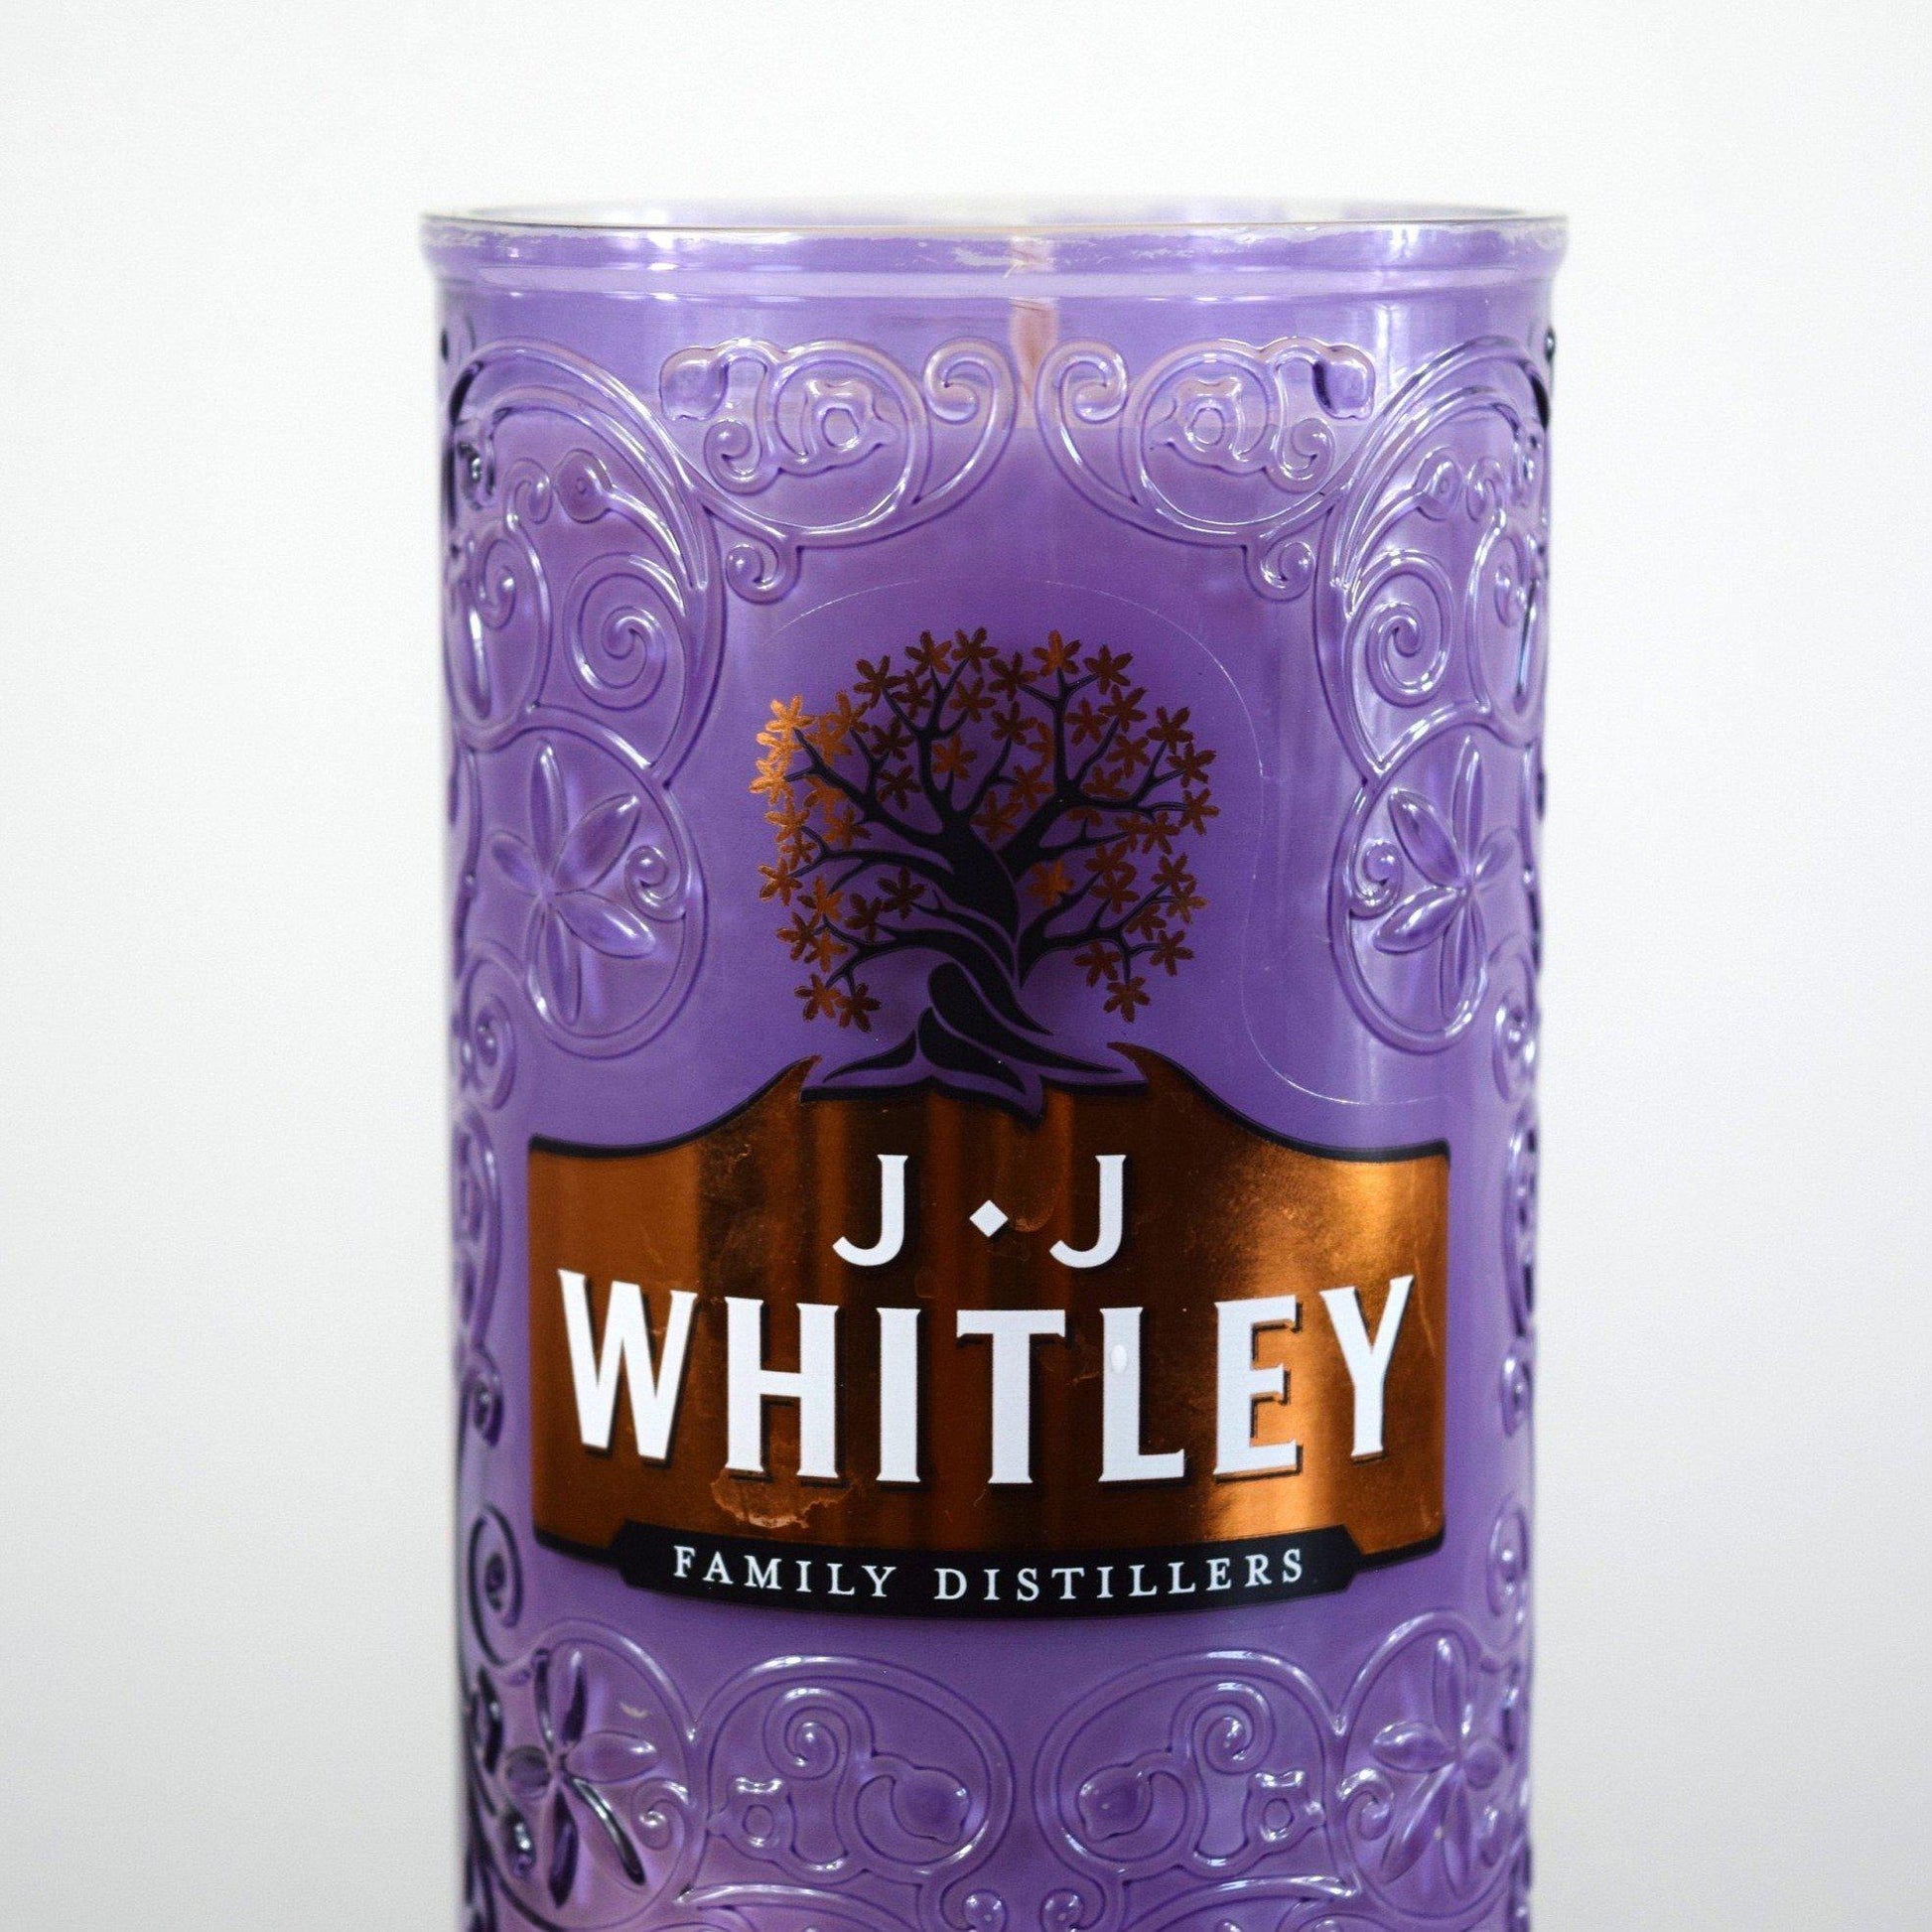 J.J Whitley Violet Gin Bottle Candle Gin Bottle Candles Adhock Homeware